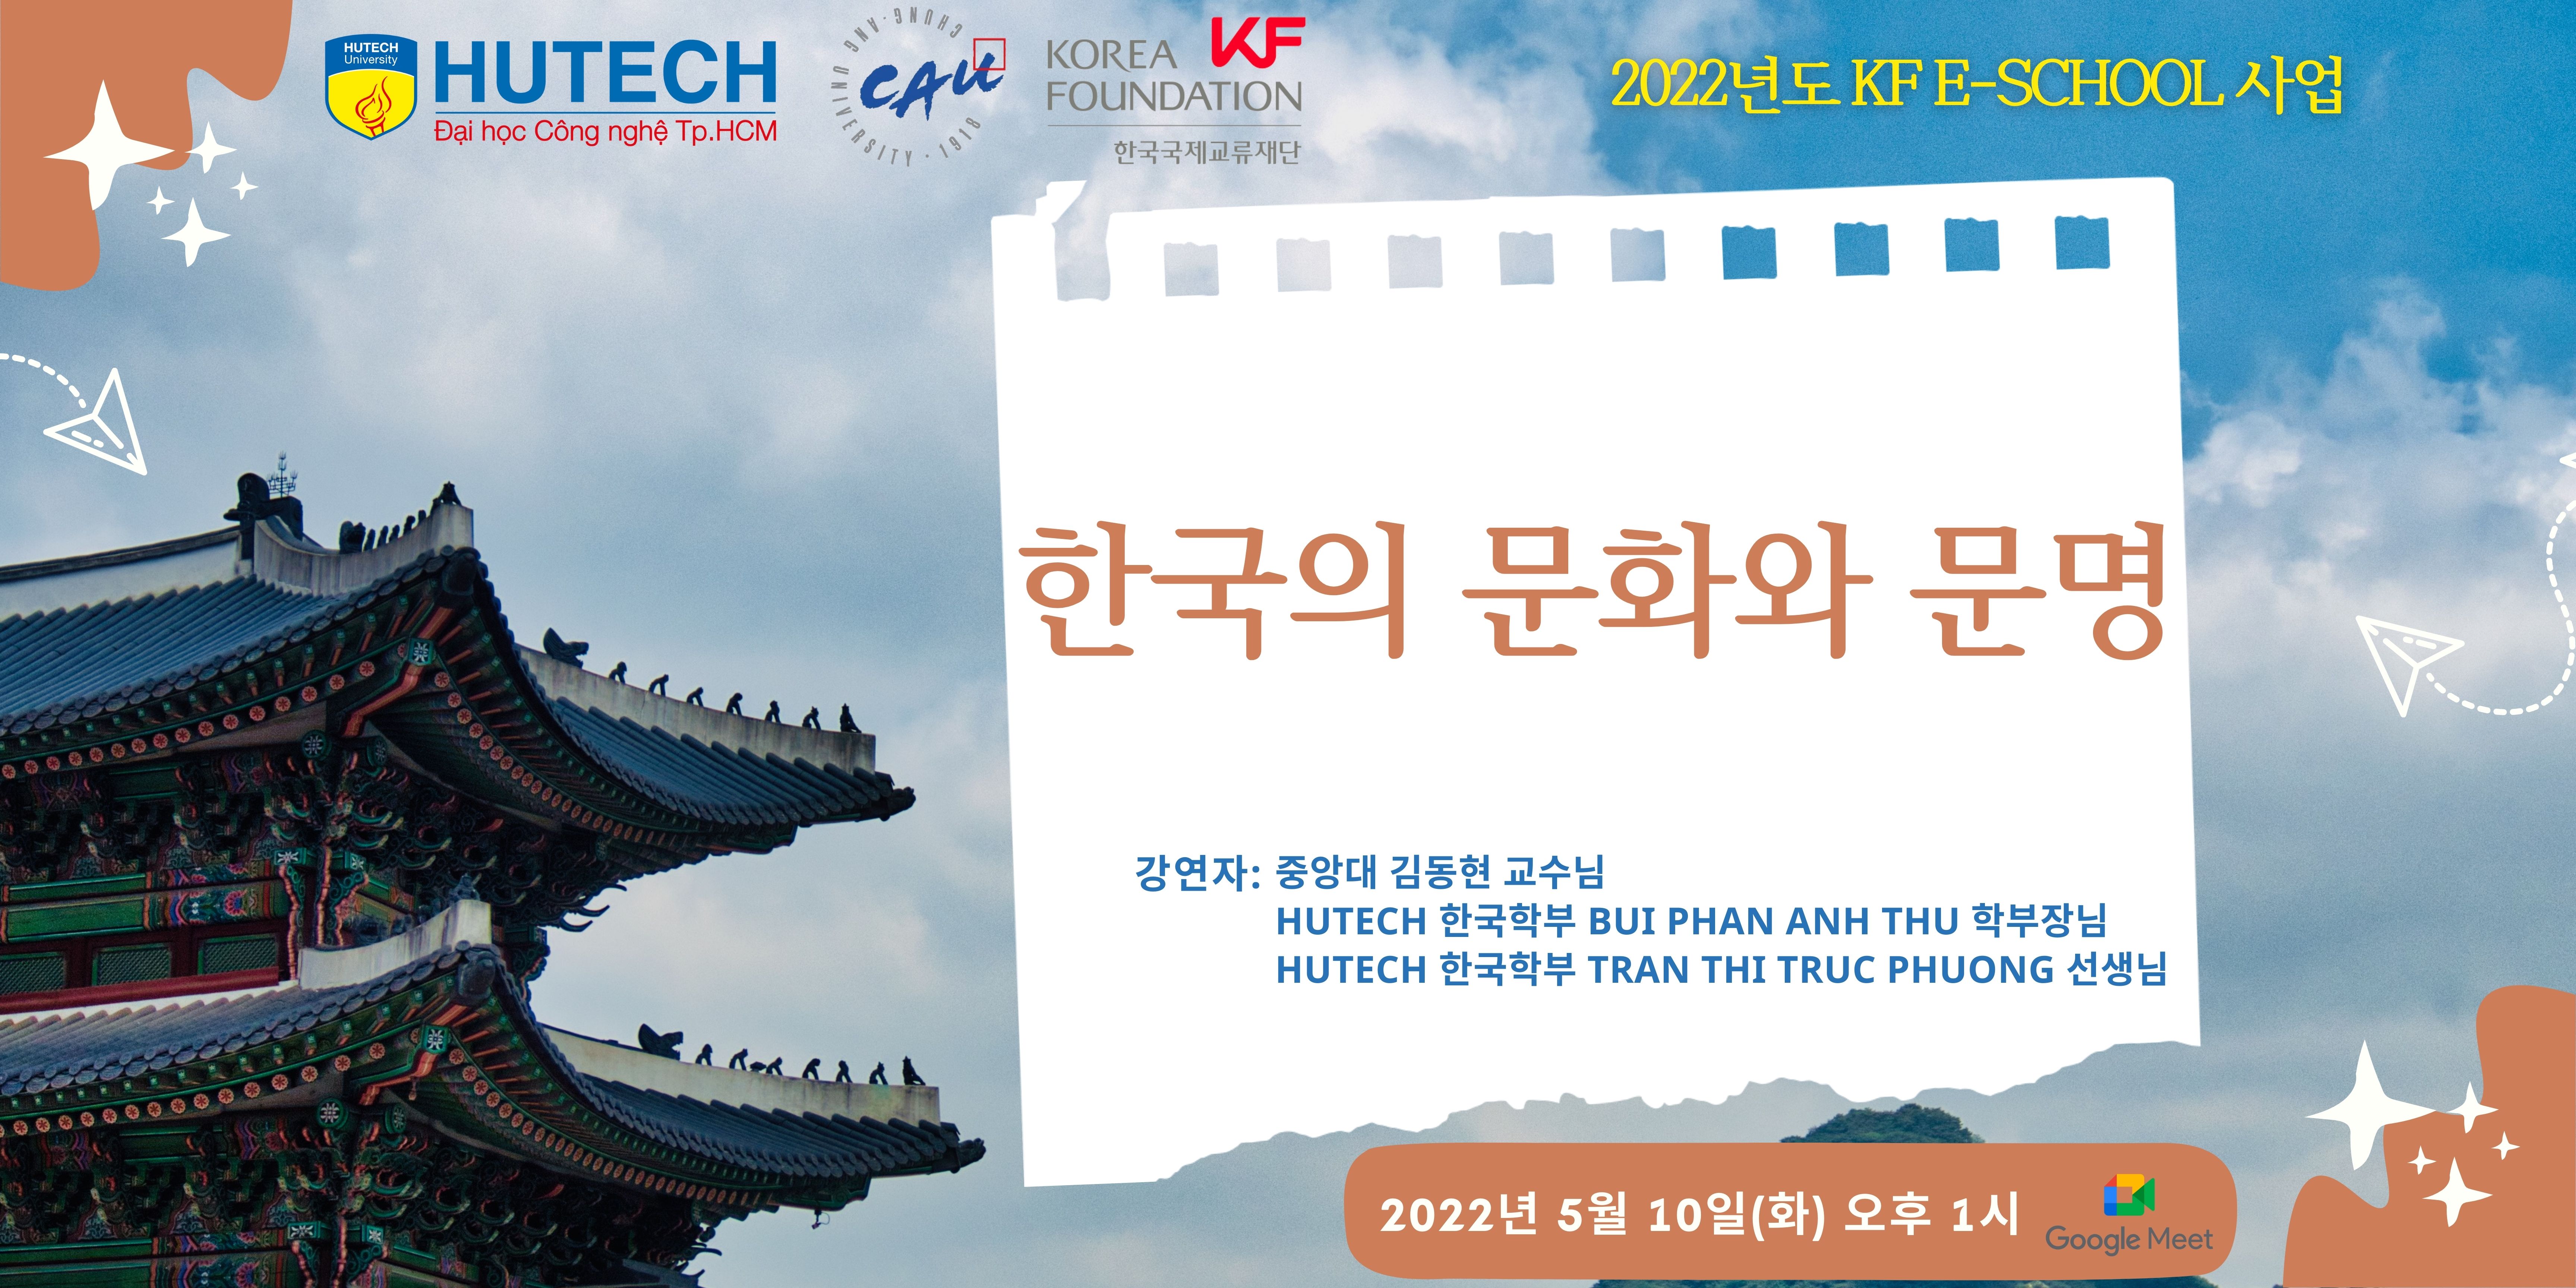 Sinh viên Khoa Hàn Quốc học tham gia buổi chuyên đề về “Văn hóa đại chúng và nền công nghiệp giải trí Hàn Quốc” 5